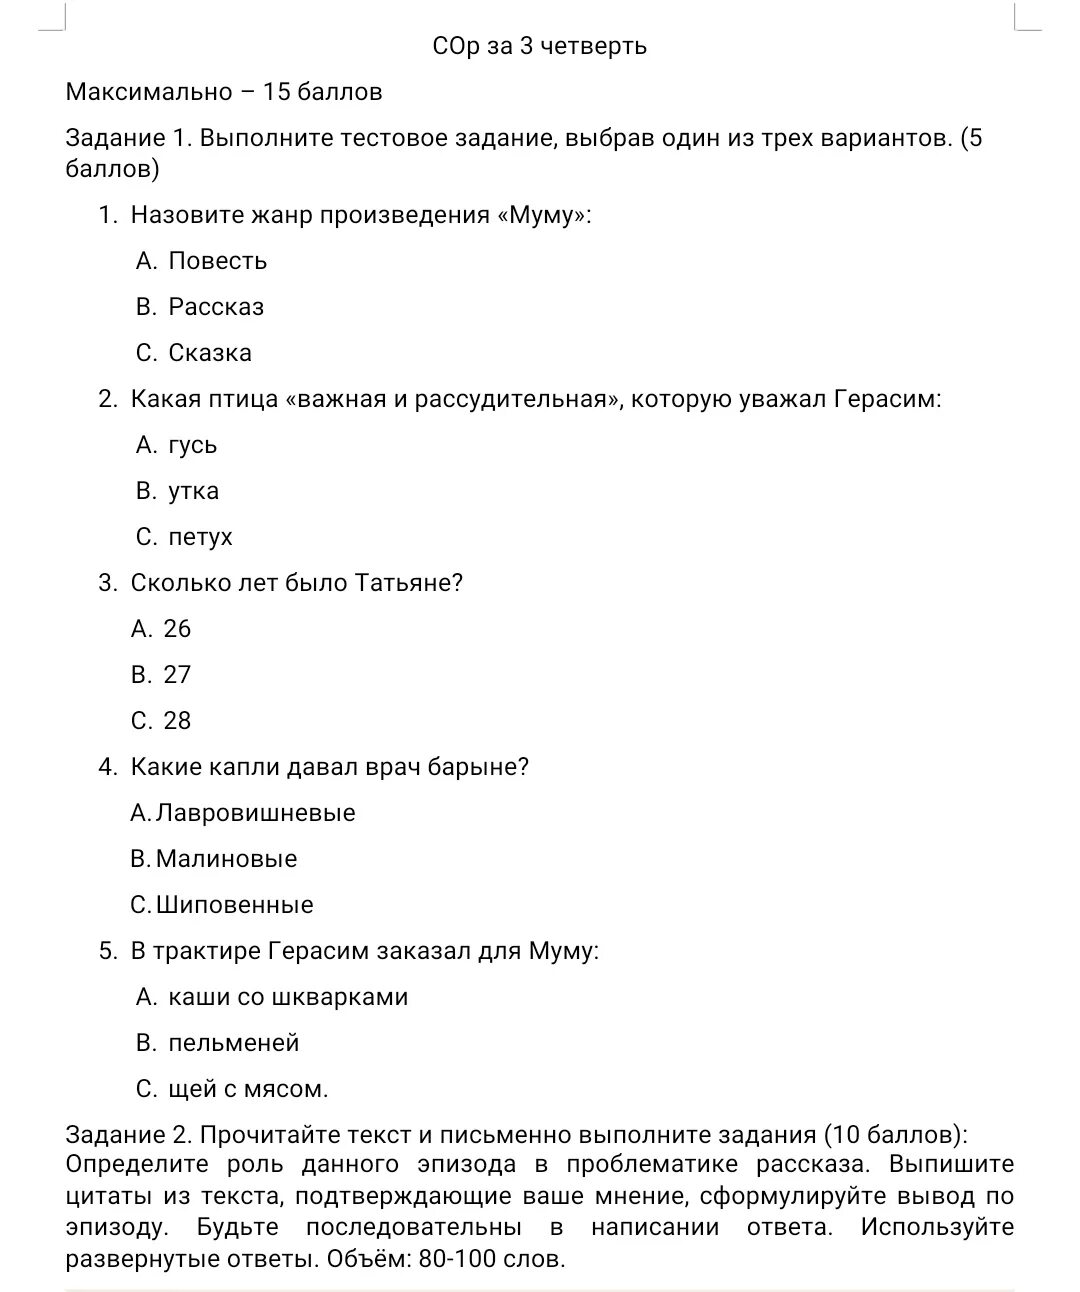 Соч литература 3 класс 3 четверть казахстан